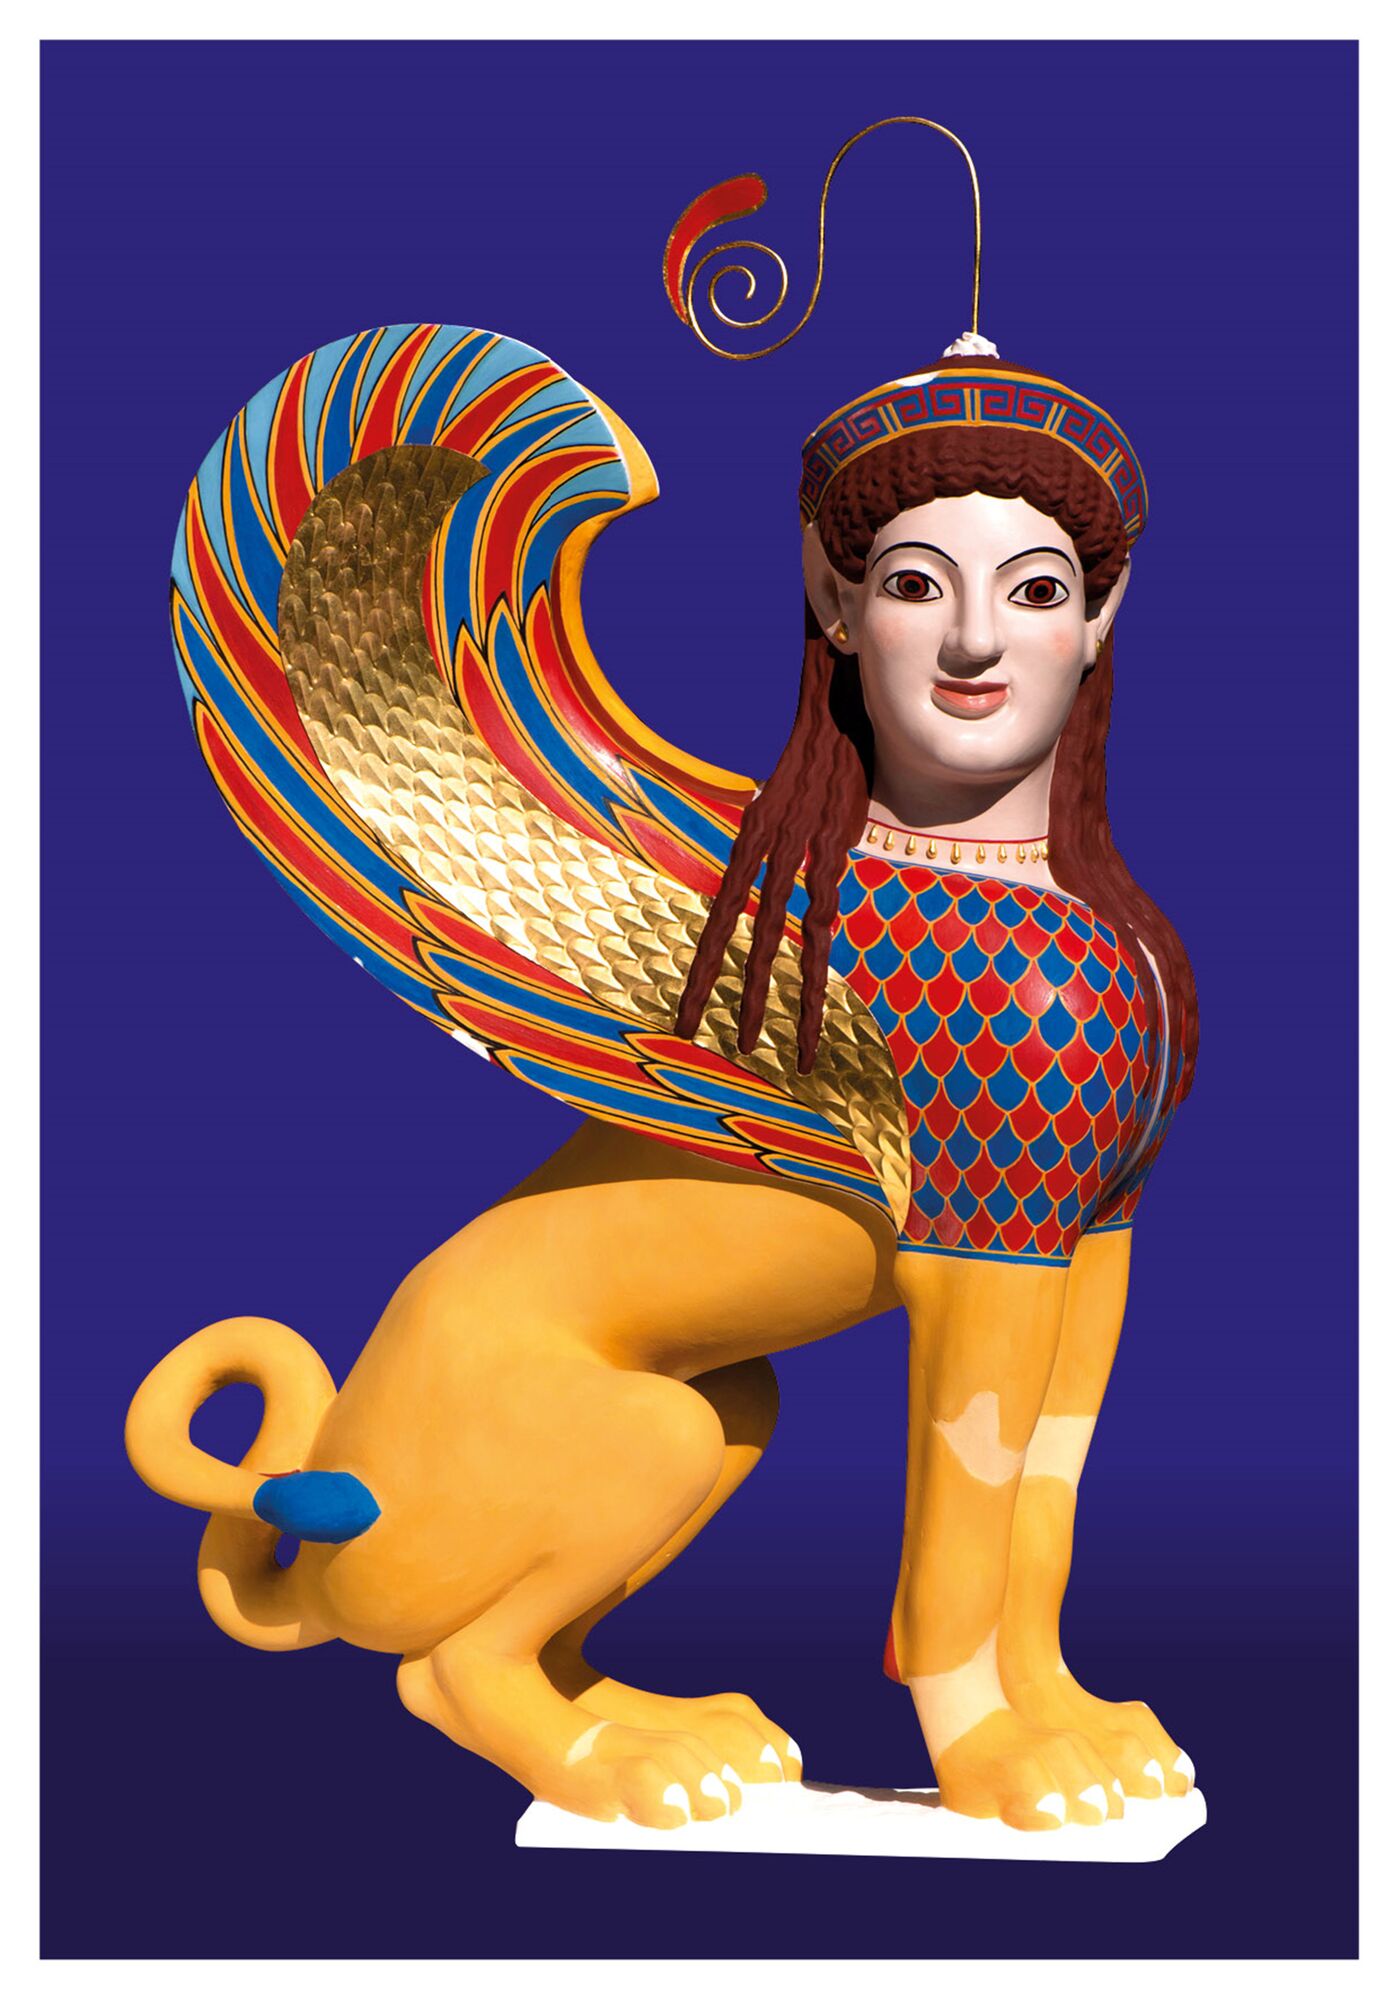 Expo 'De oudheid in kleur' toont antieke beelden in oorspronkelijke kleuren